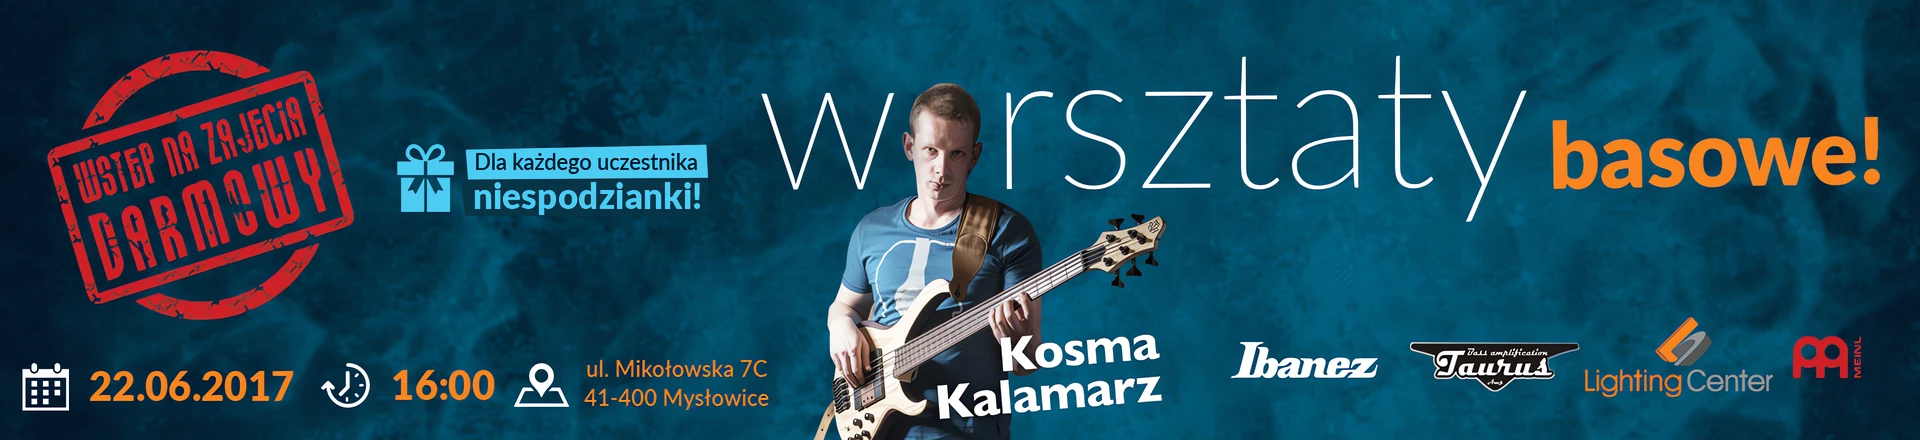 Lighting Center i Kosma Kalamarz zapraszają na basowe warsztaty! 